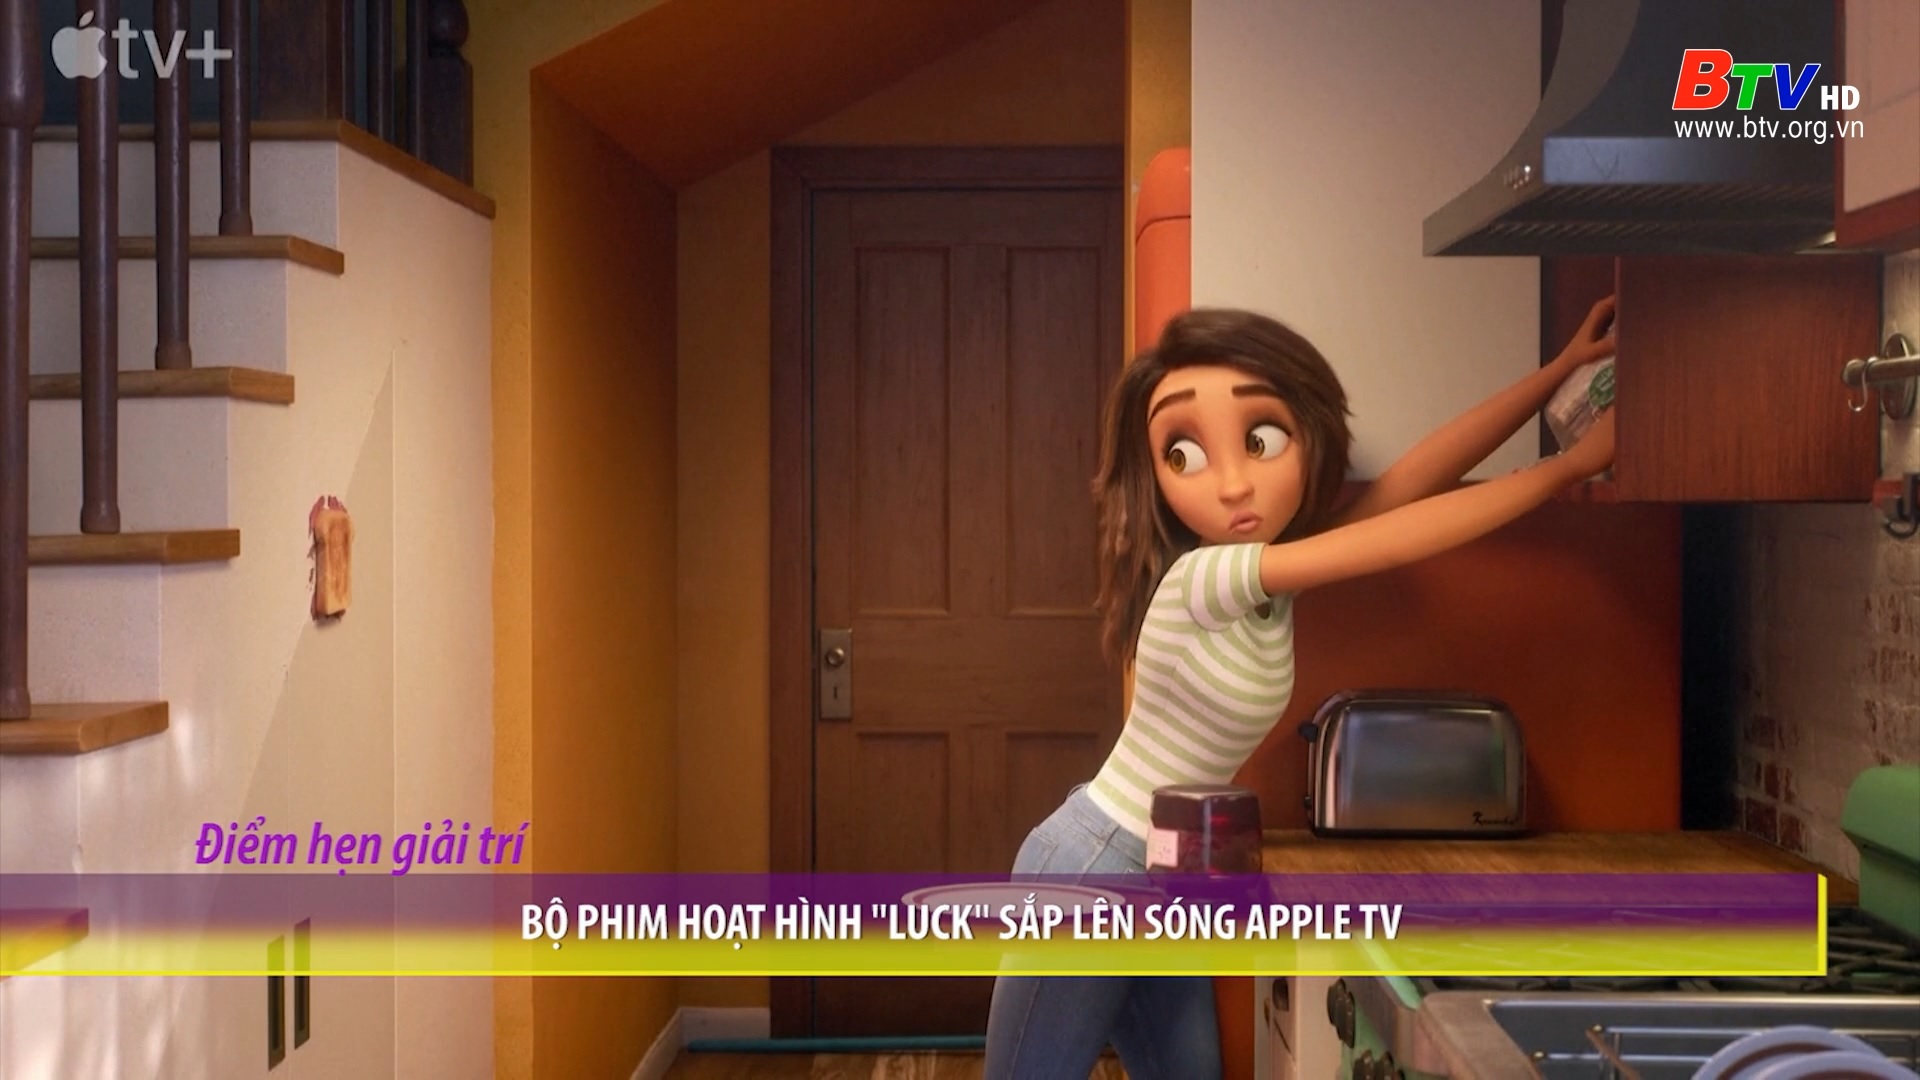 Bộ phim hoạt hình “Luck”  lên sóng Apple TV